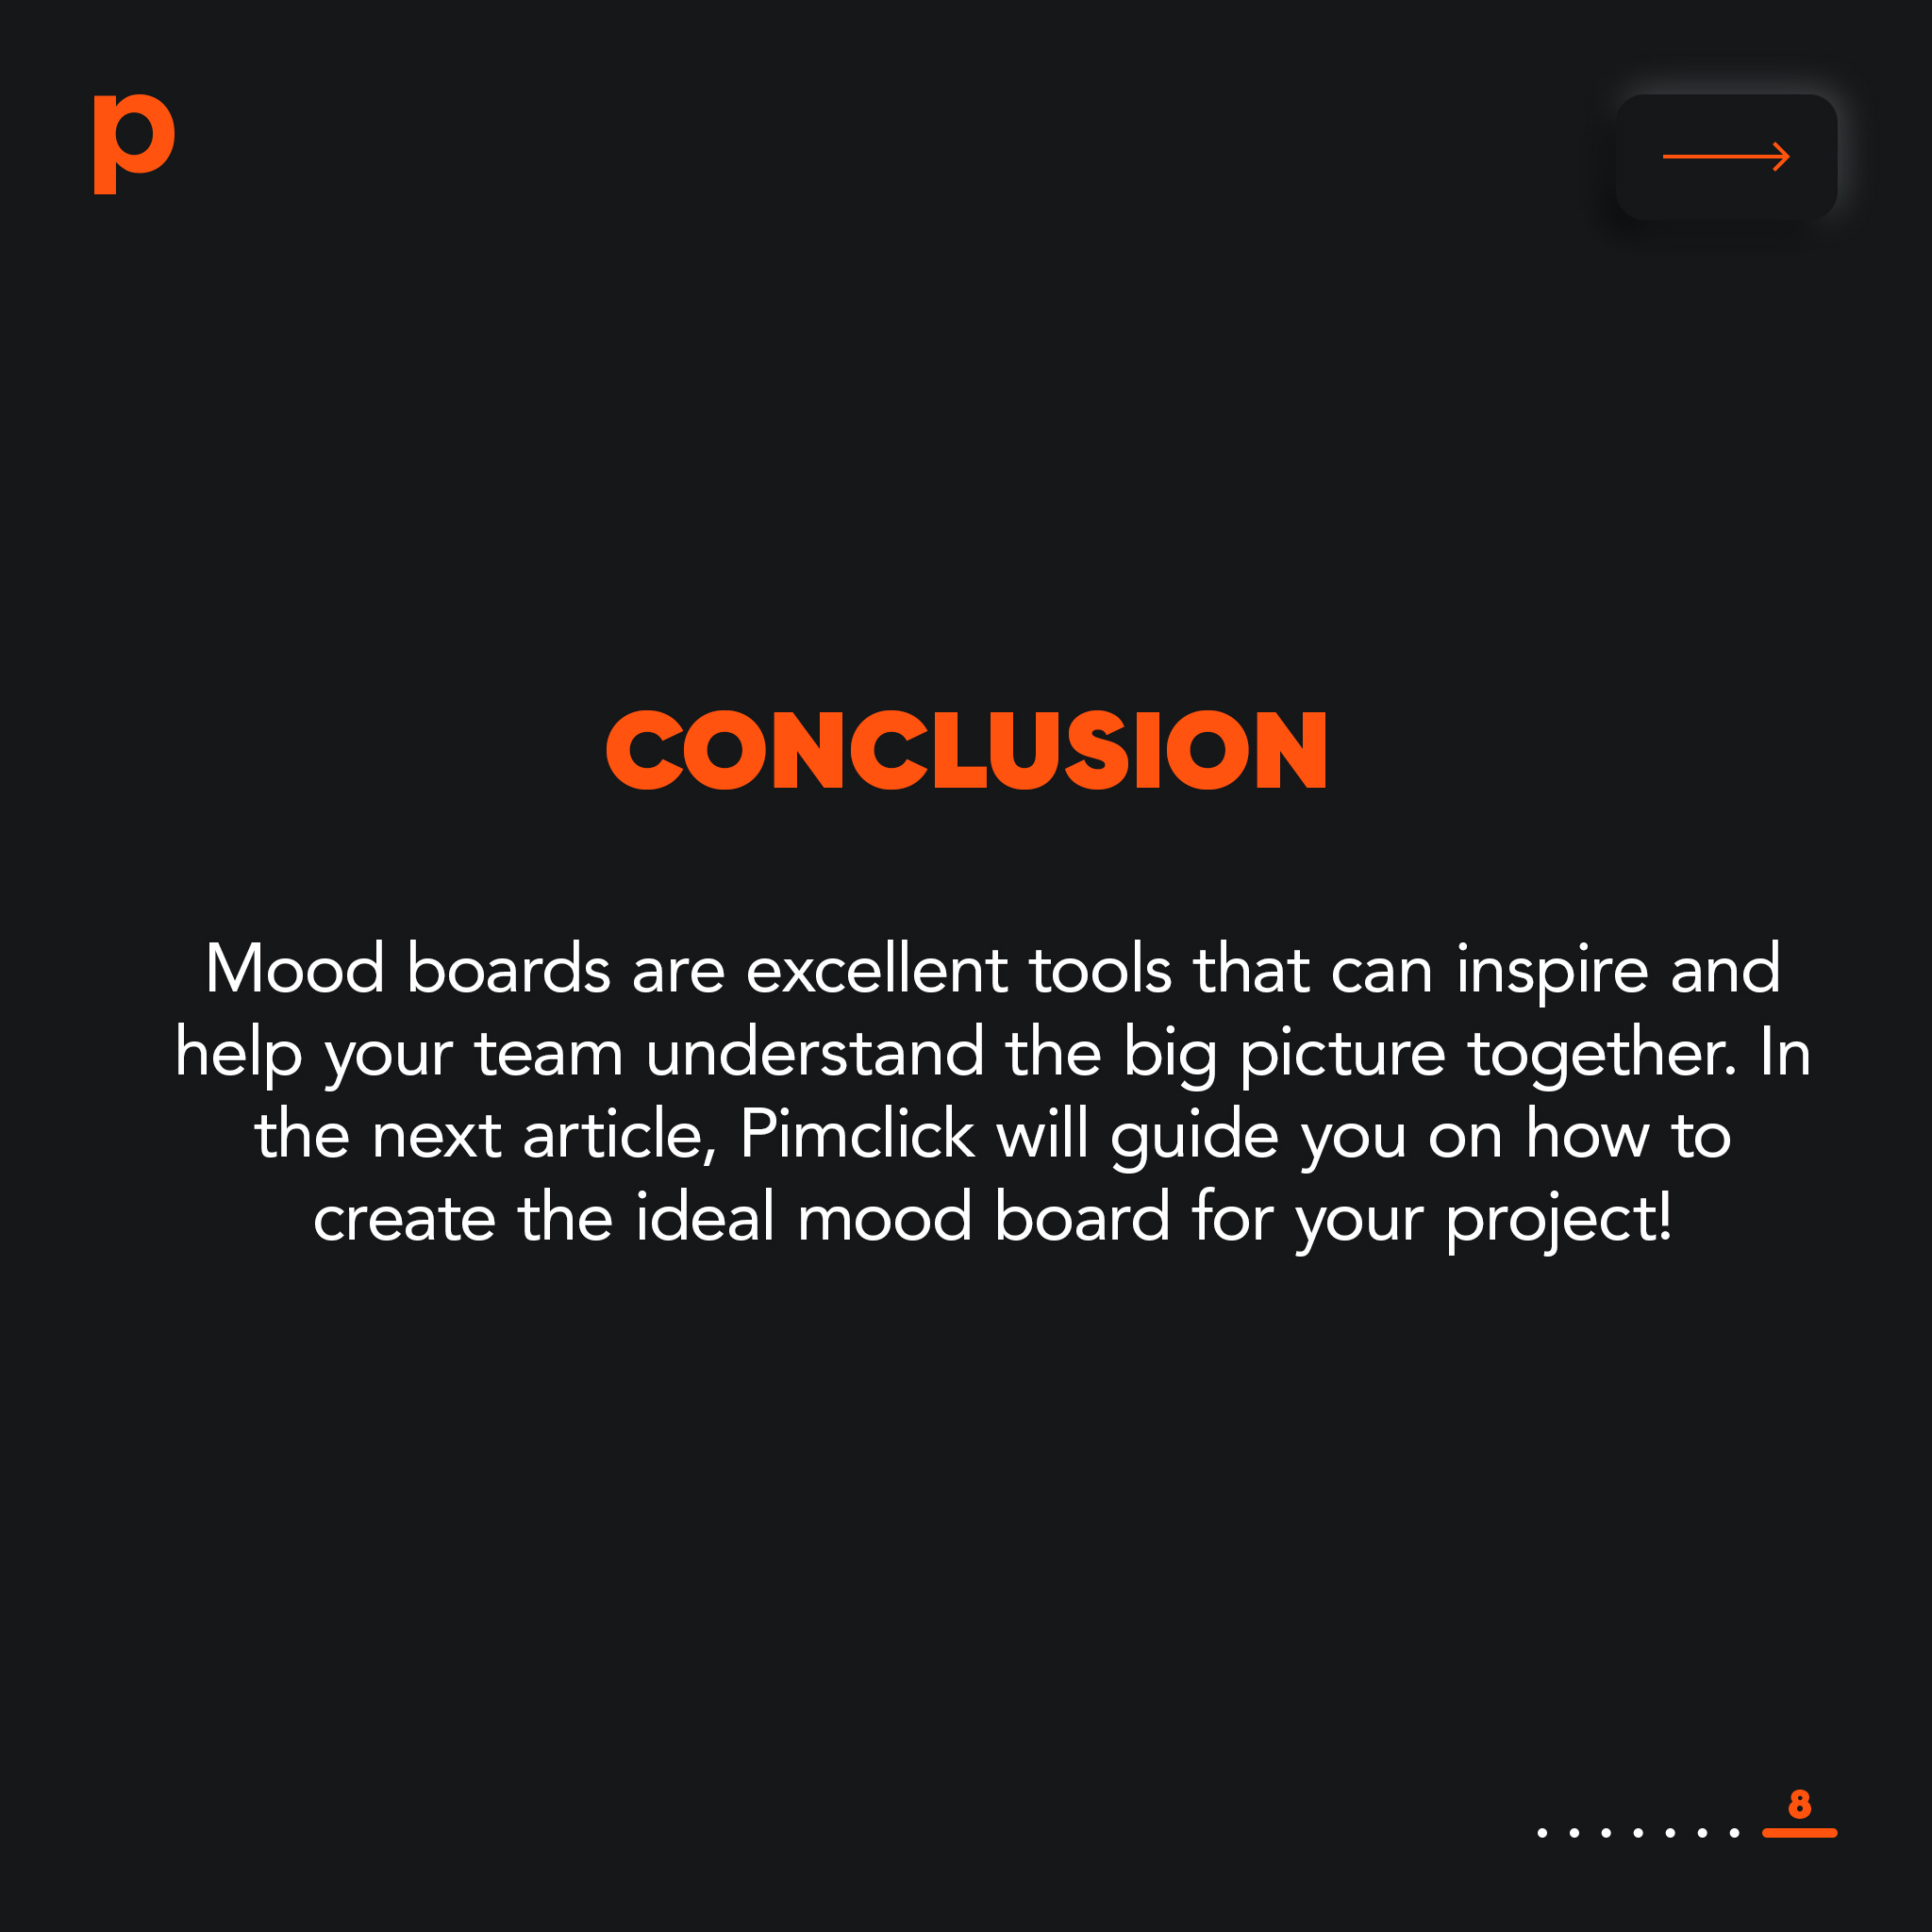 ทำความรู้จัก Mood Board หนึ่งในเครื่องมือที่ดีที่สุดสำหรับการสร้างสรรค์แคมเปญโฆษณา